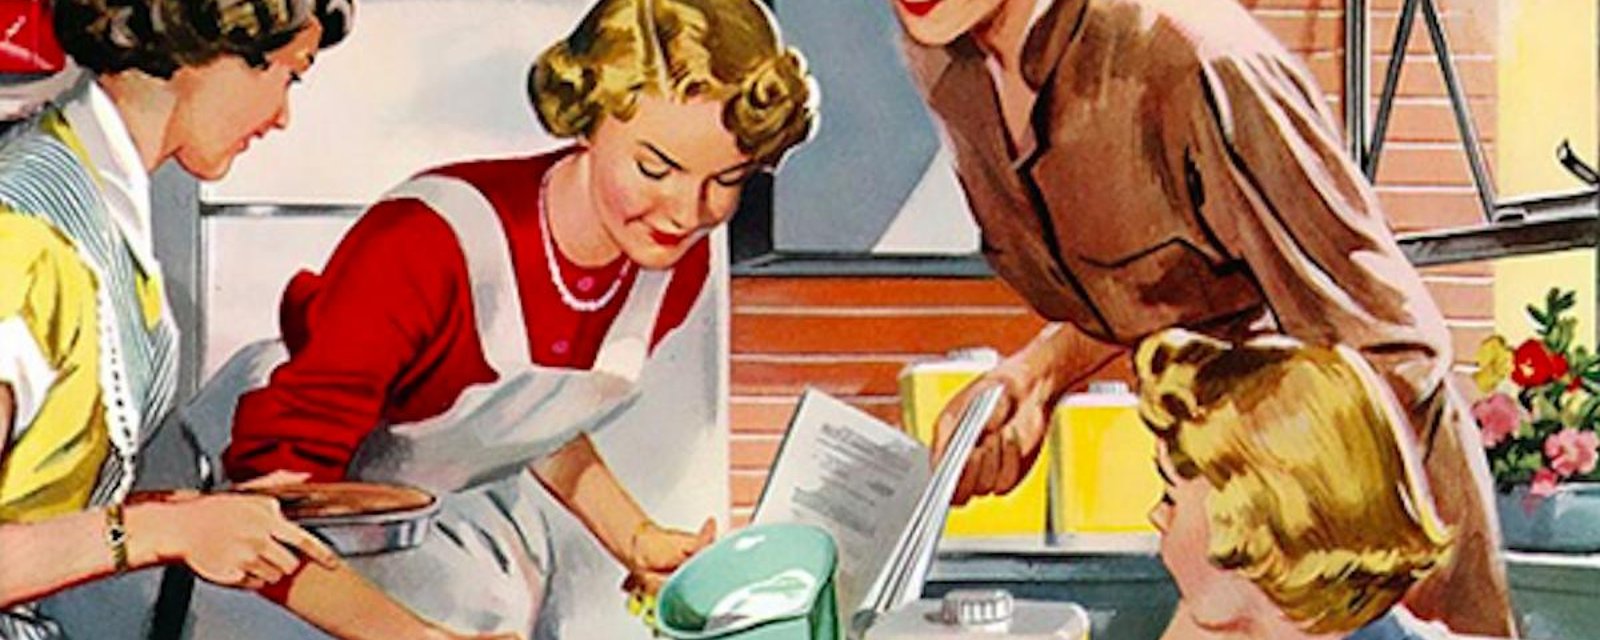 Nostalgiques des années 50? Lisez ces 12 conseils qui ont vraiment été donnés aux épouses de l'époque!